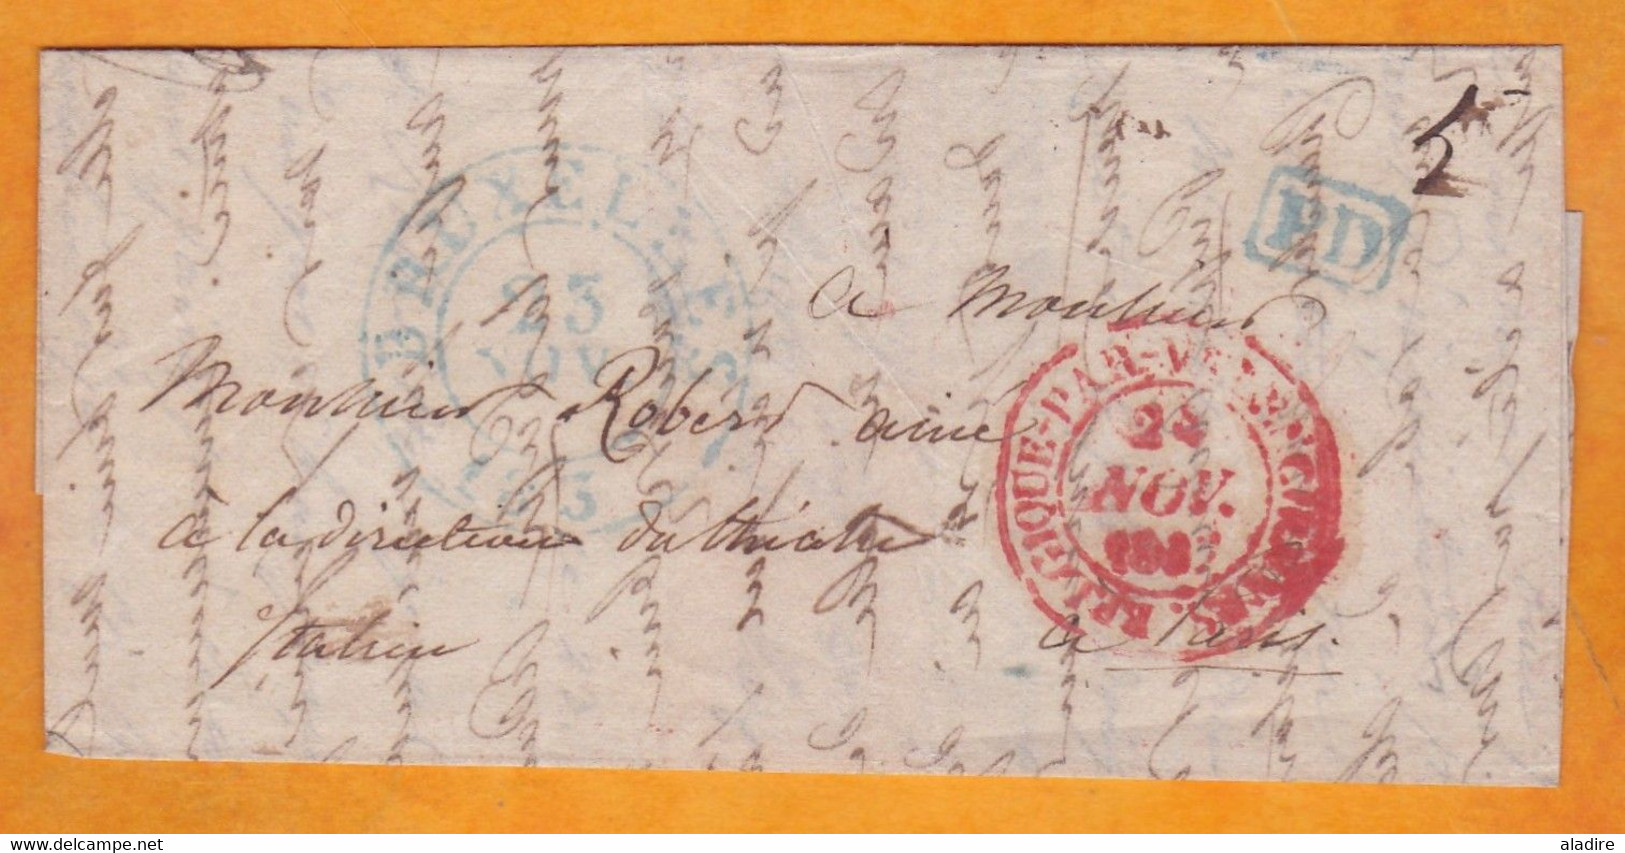 1837 - Lettre Pliée Personnelle En Français De BRUXELLES, Belgique Indépendante Vers PARIS, France - Entrée Valenciennes - 1830-1849 (Unabhängiges Belgien)